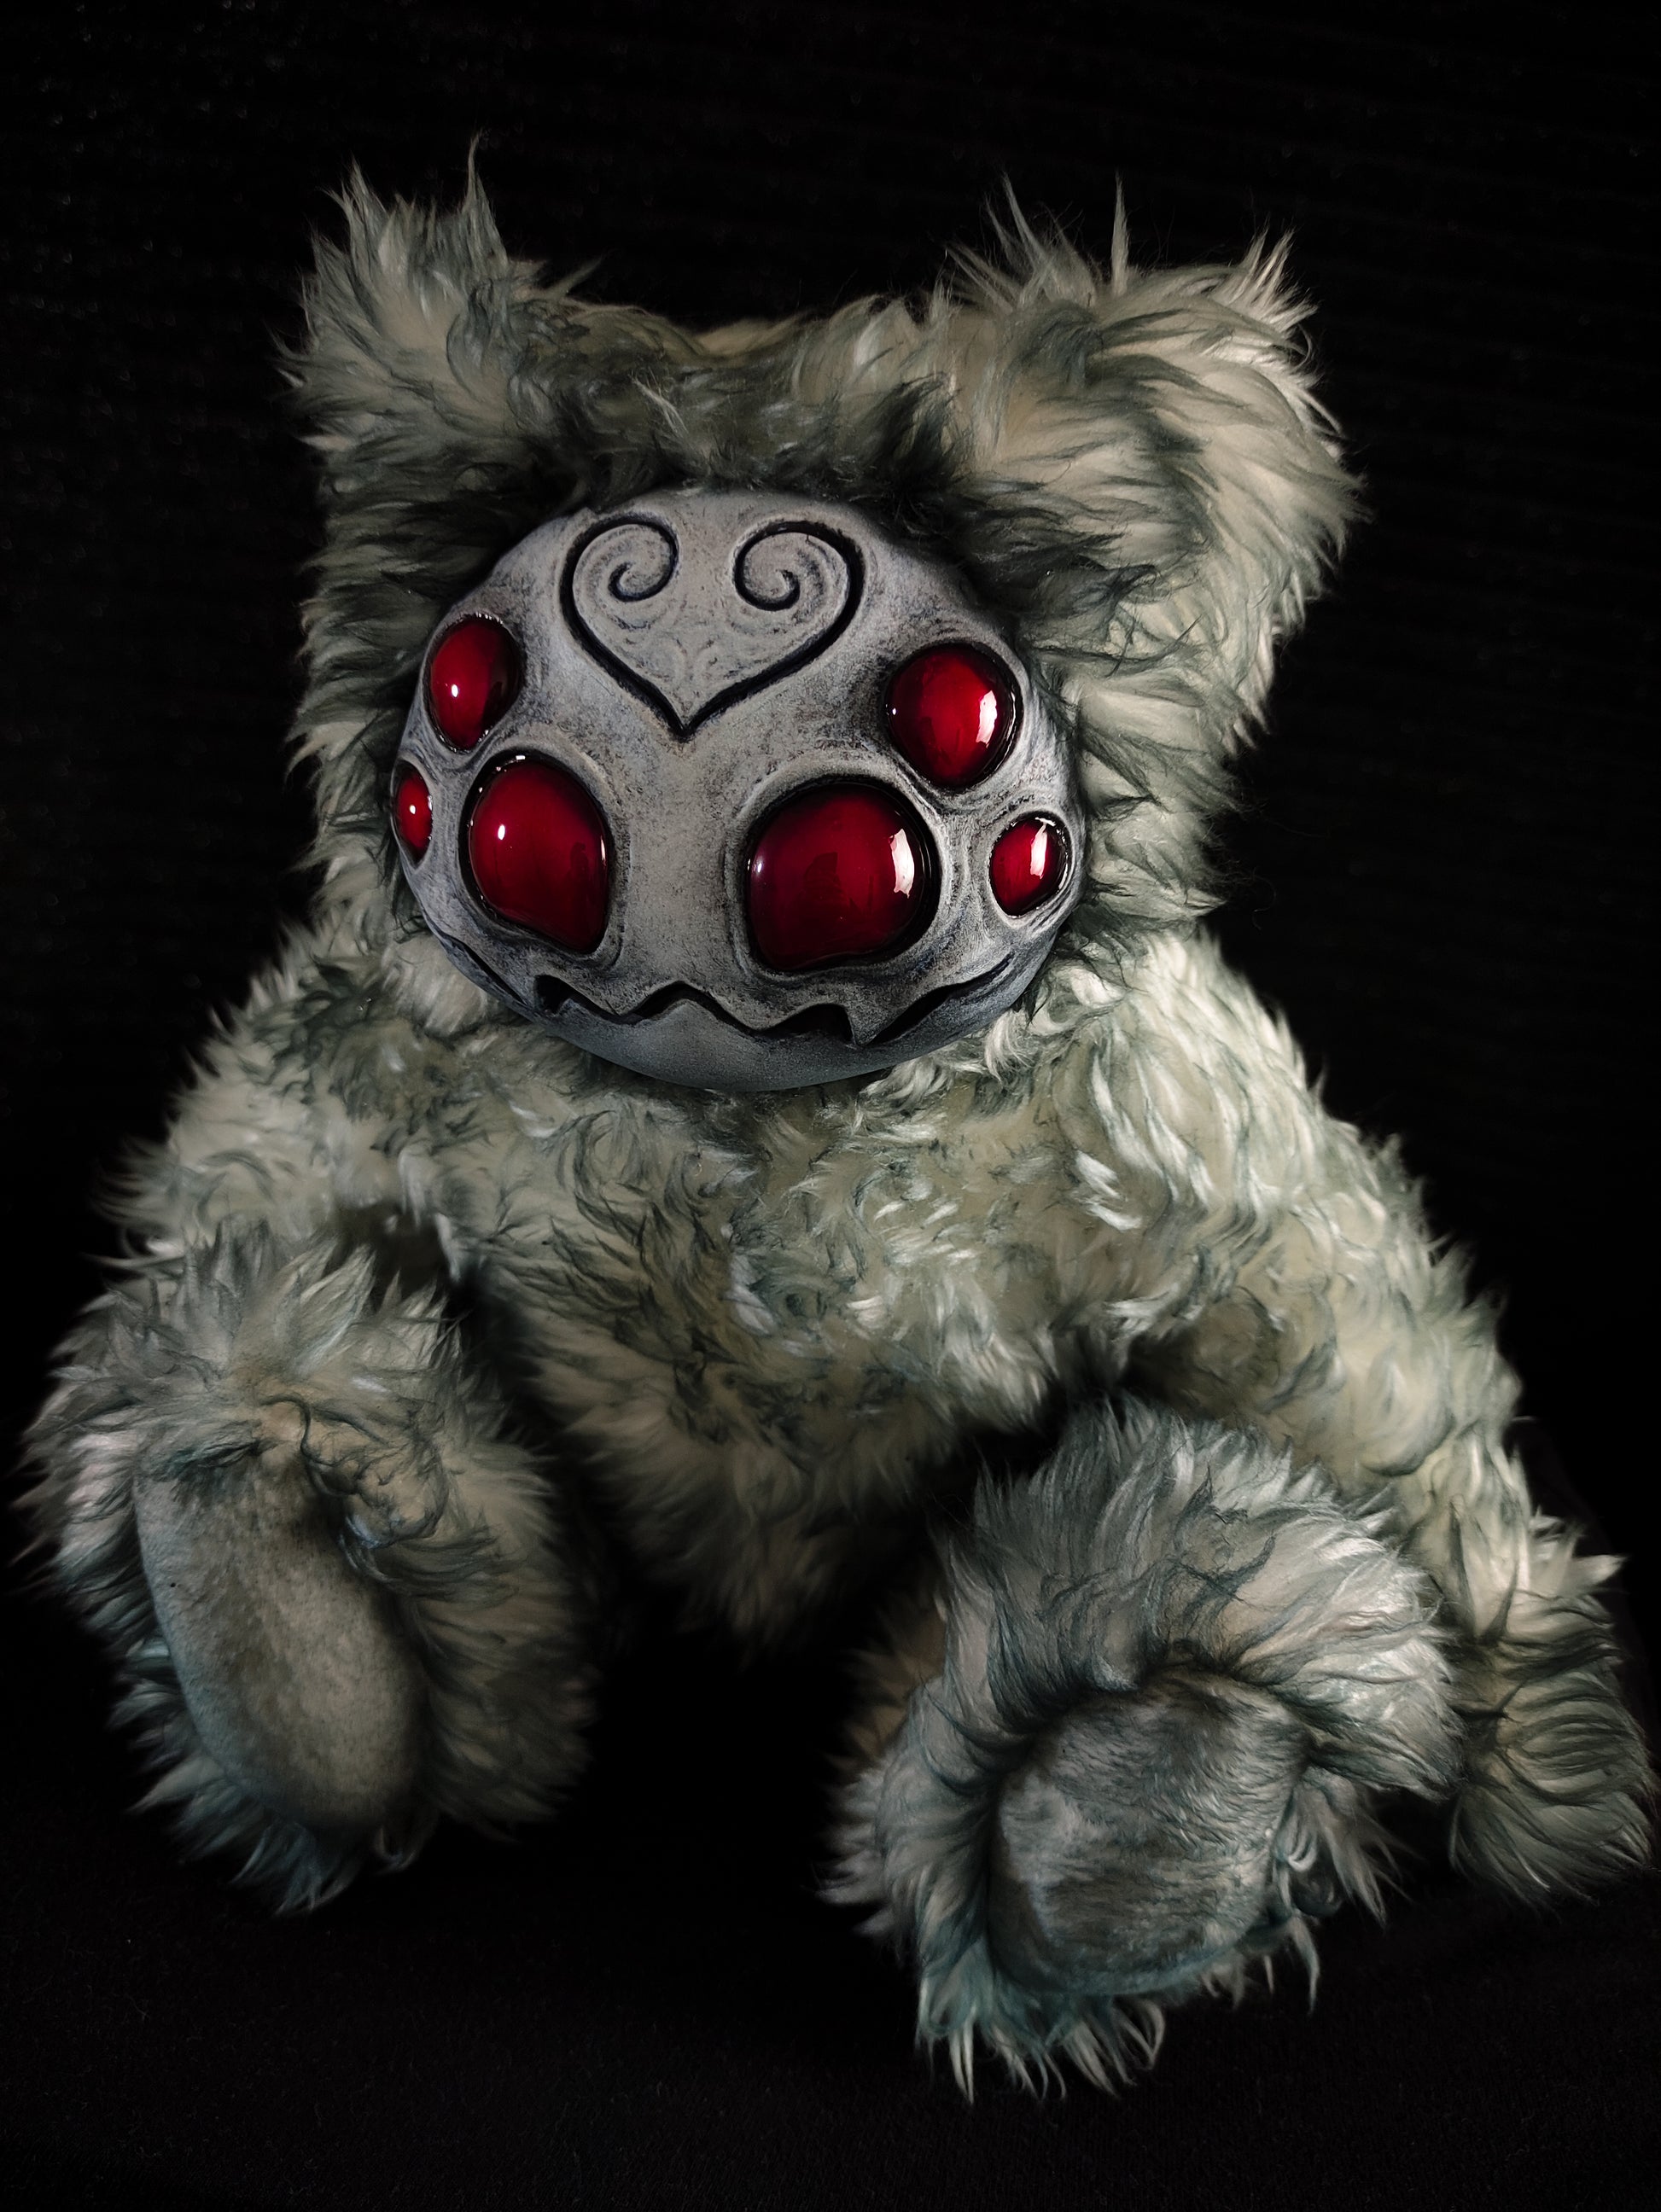 Arakobe (Albino Arachnid Ver.) - Monster Art Doll Plush Toy